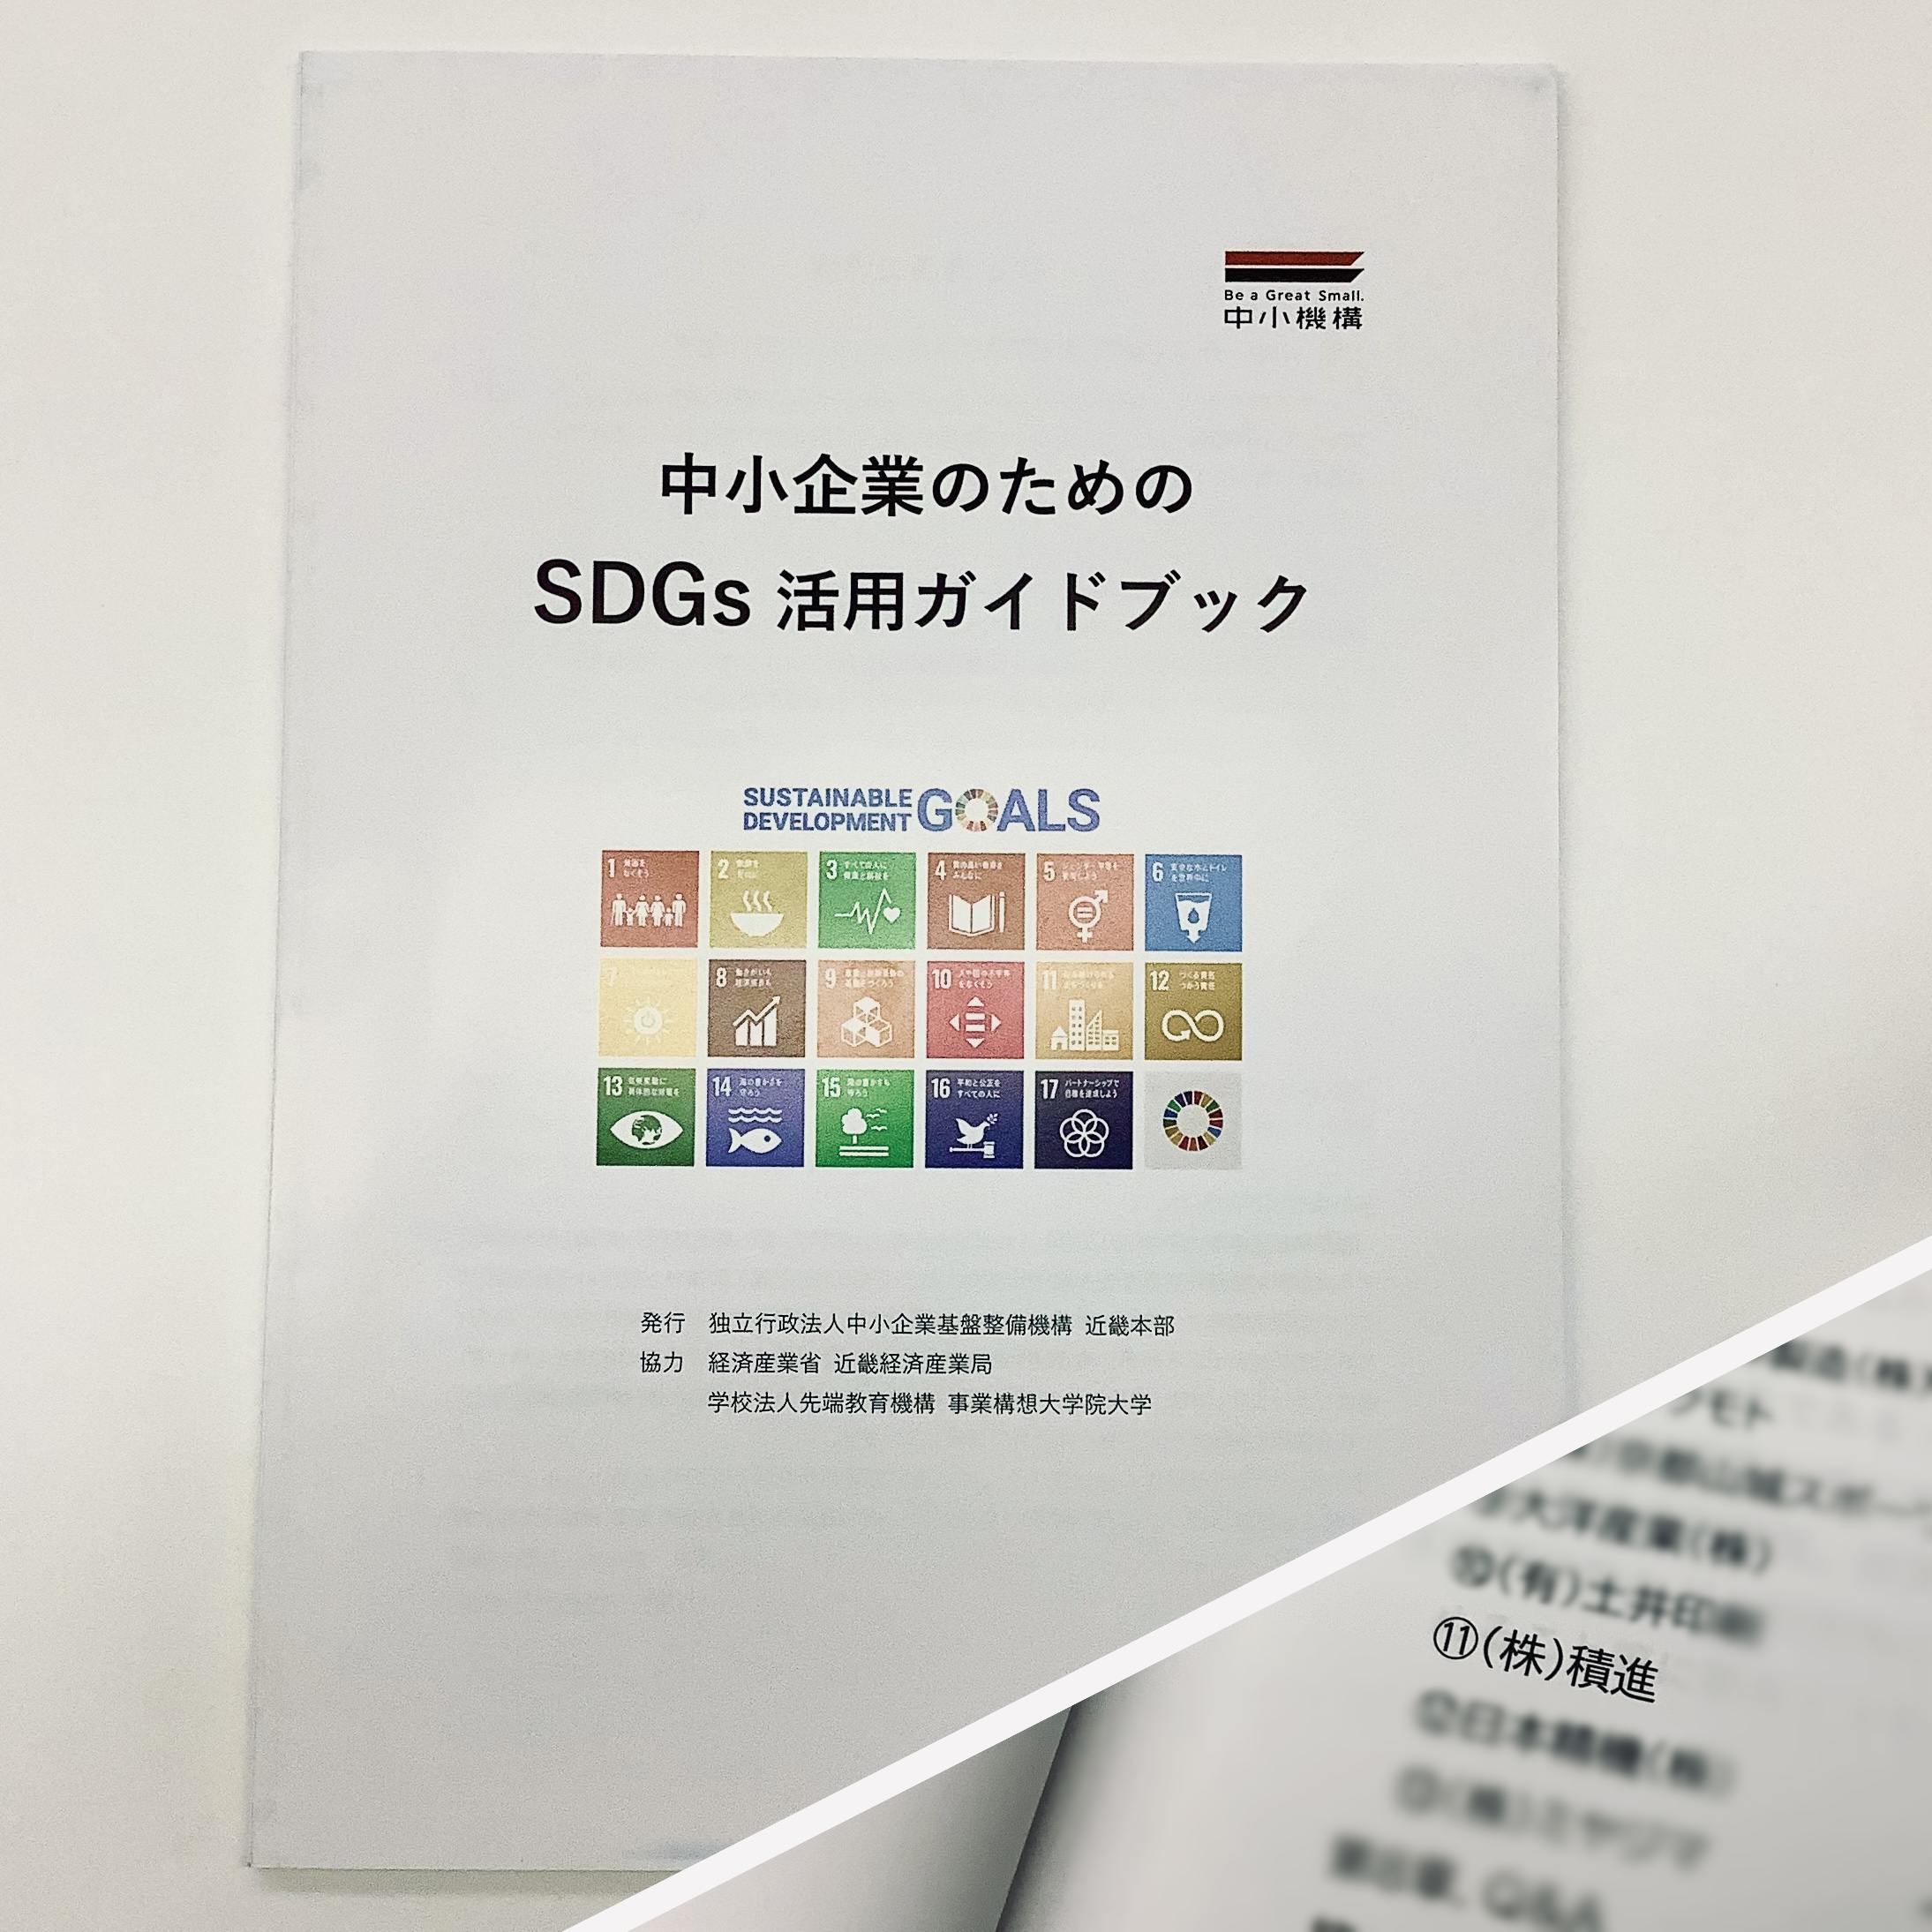 【NEWS】中小企業のためのSDGs活用ガイドブックに当社が掲載されました！